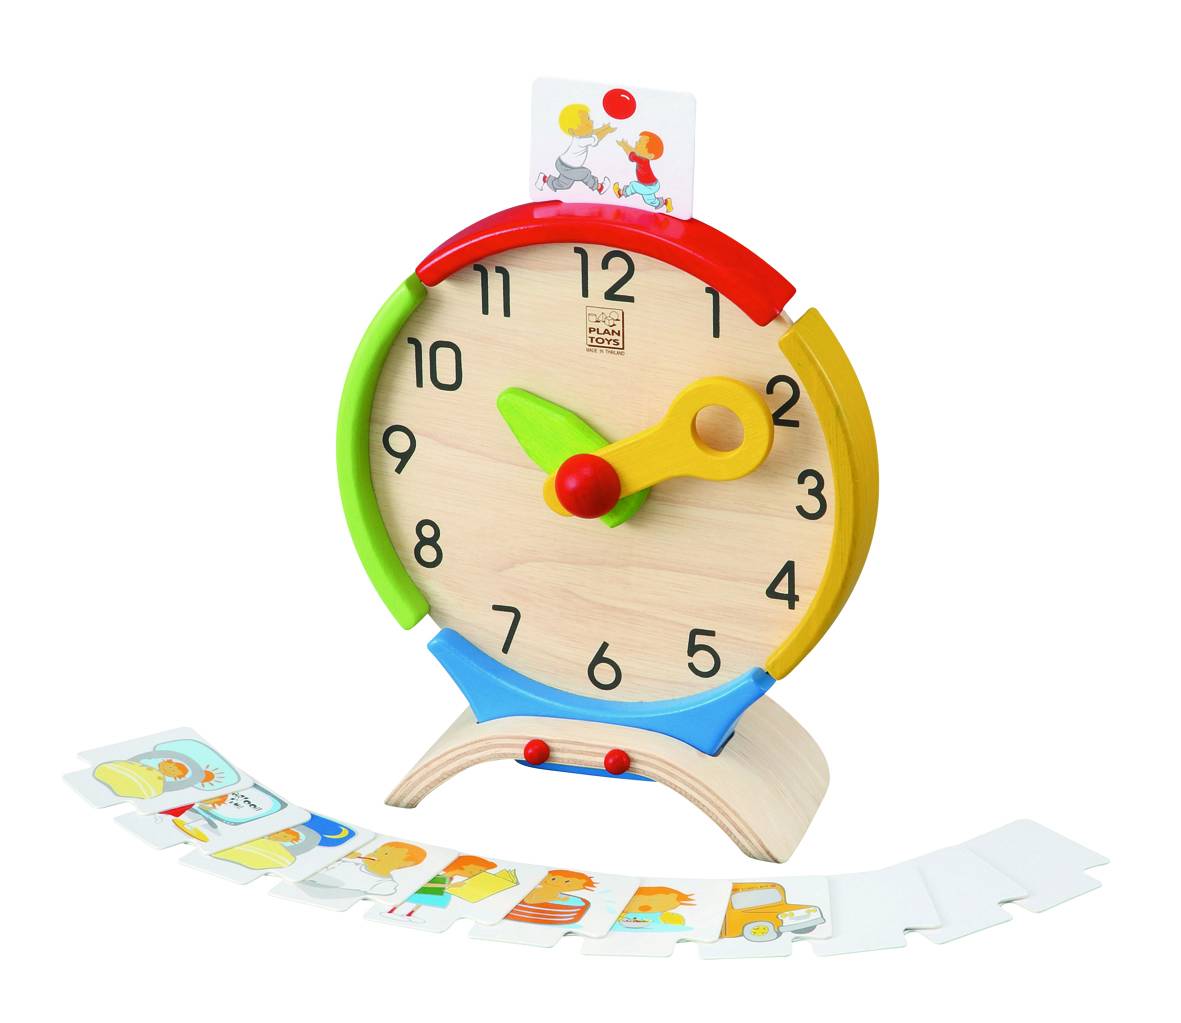 Купить игрушку часы. Часы Plan Toys. Игрушечные часы. Часы для детей Игрушечные. Часы игрушка для детей обучающие.